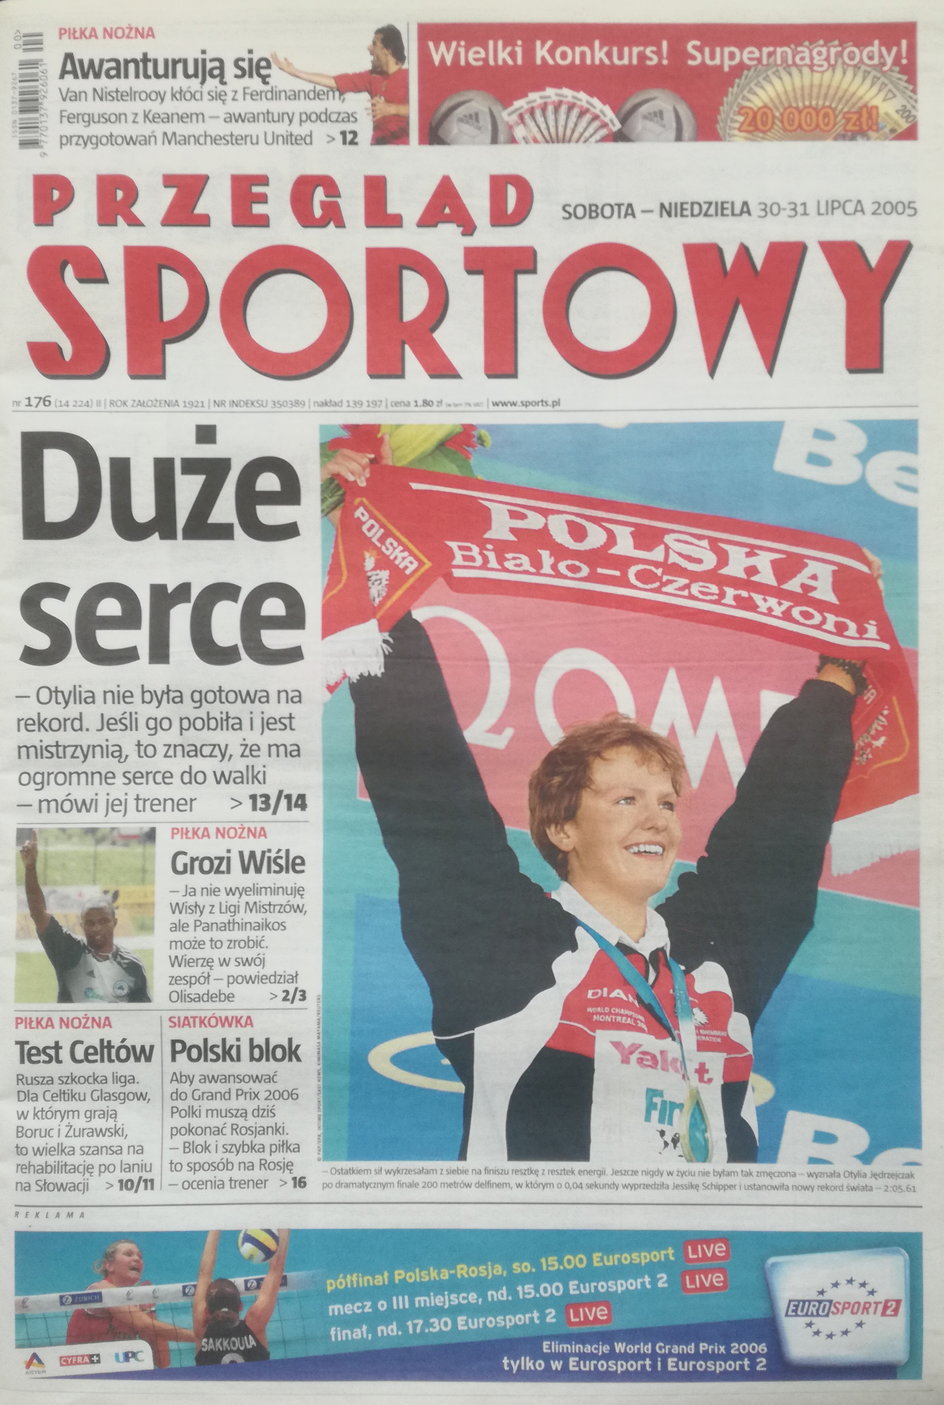 Okładka „Przeglądu Sportowego” z 30 lipca 2005 roku.